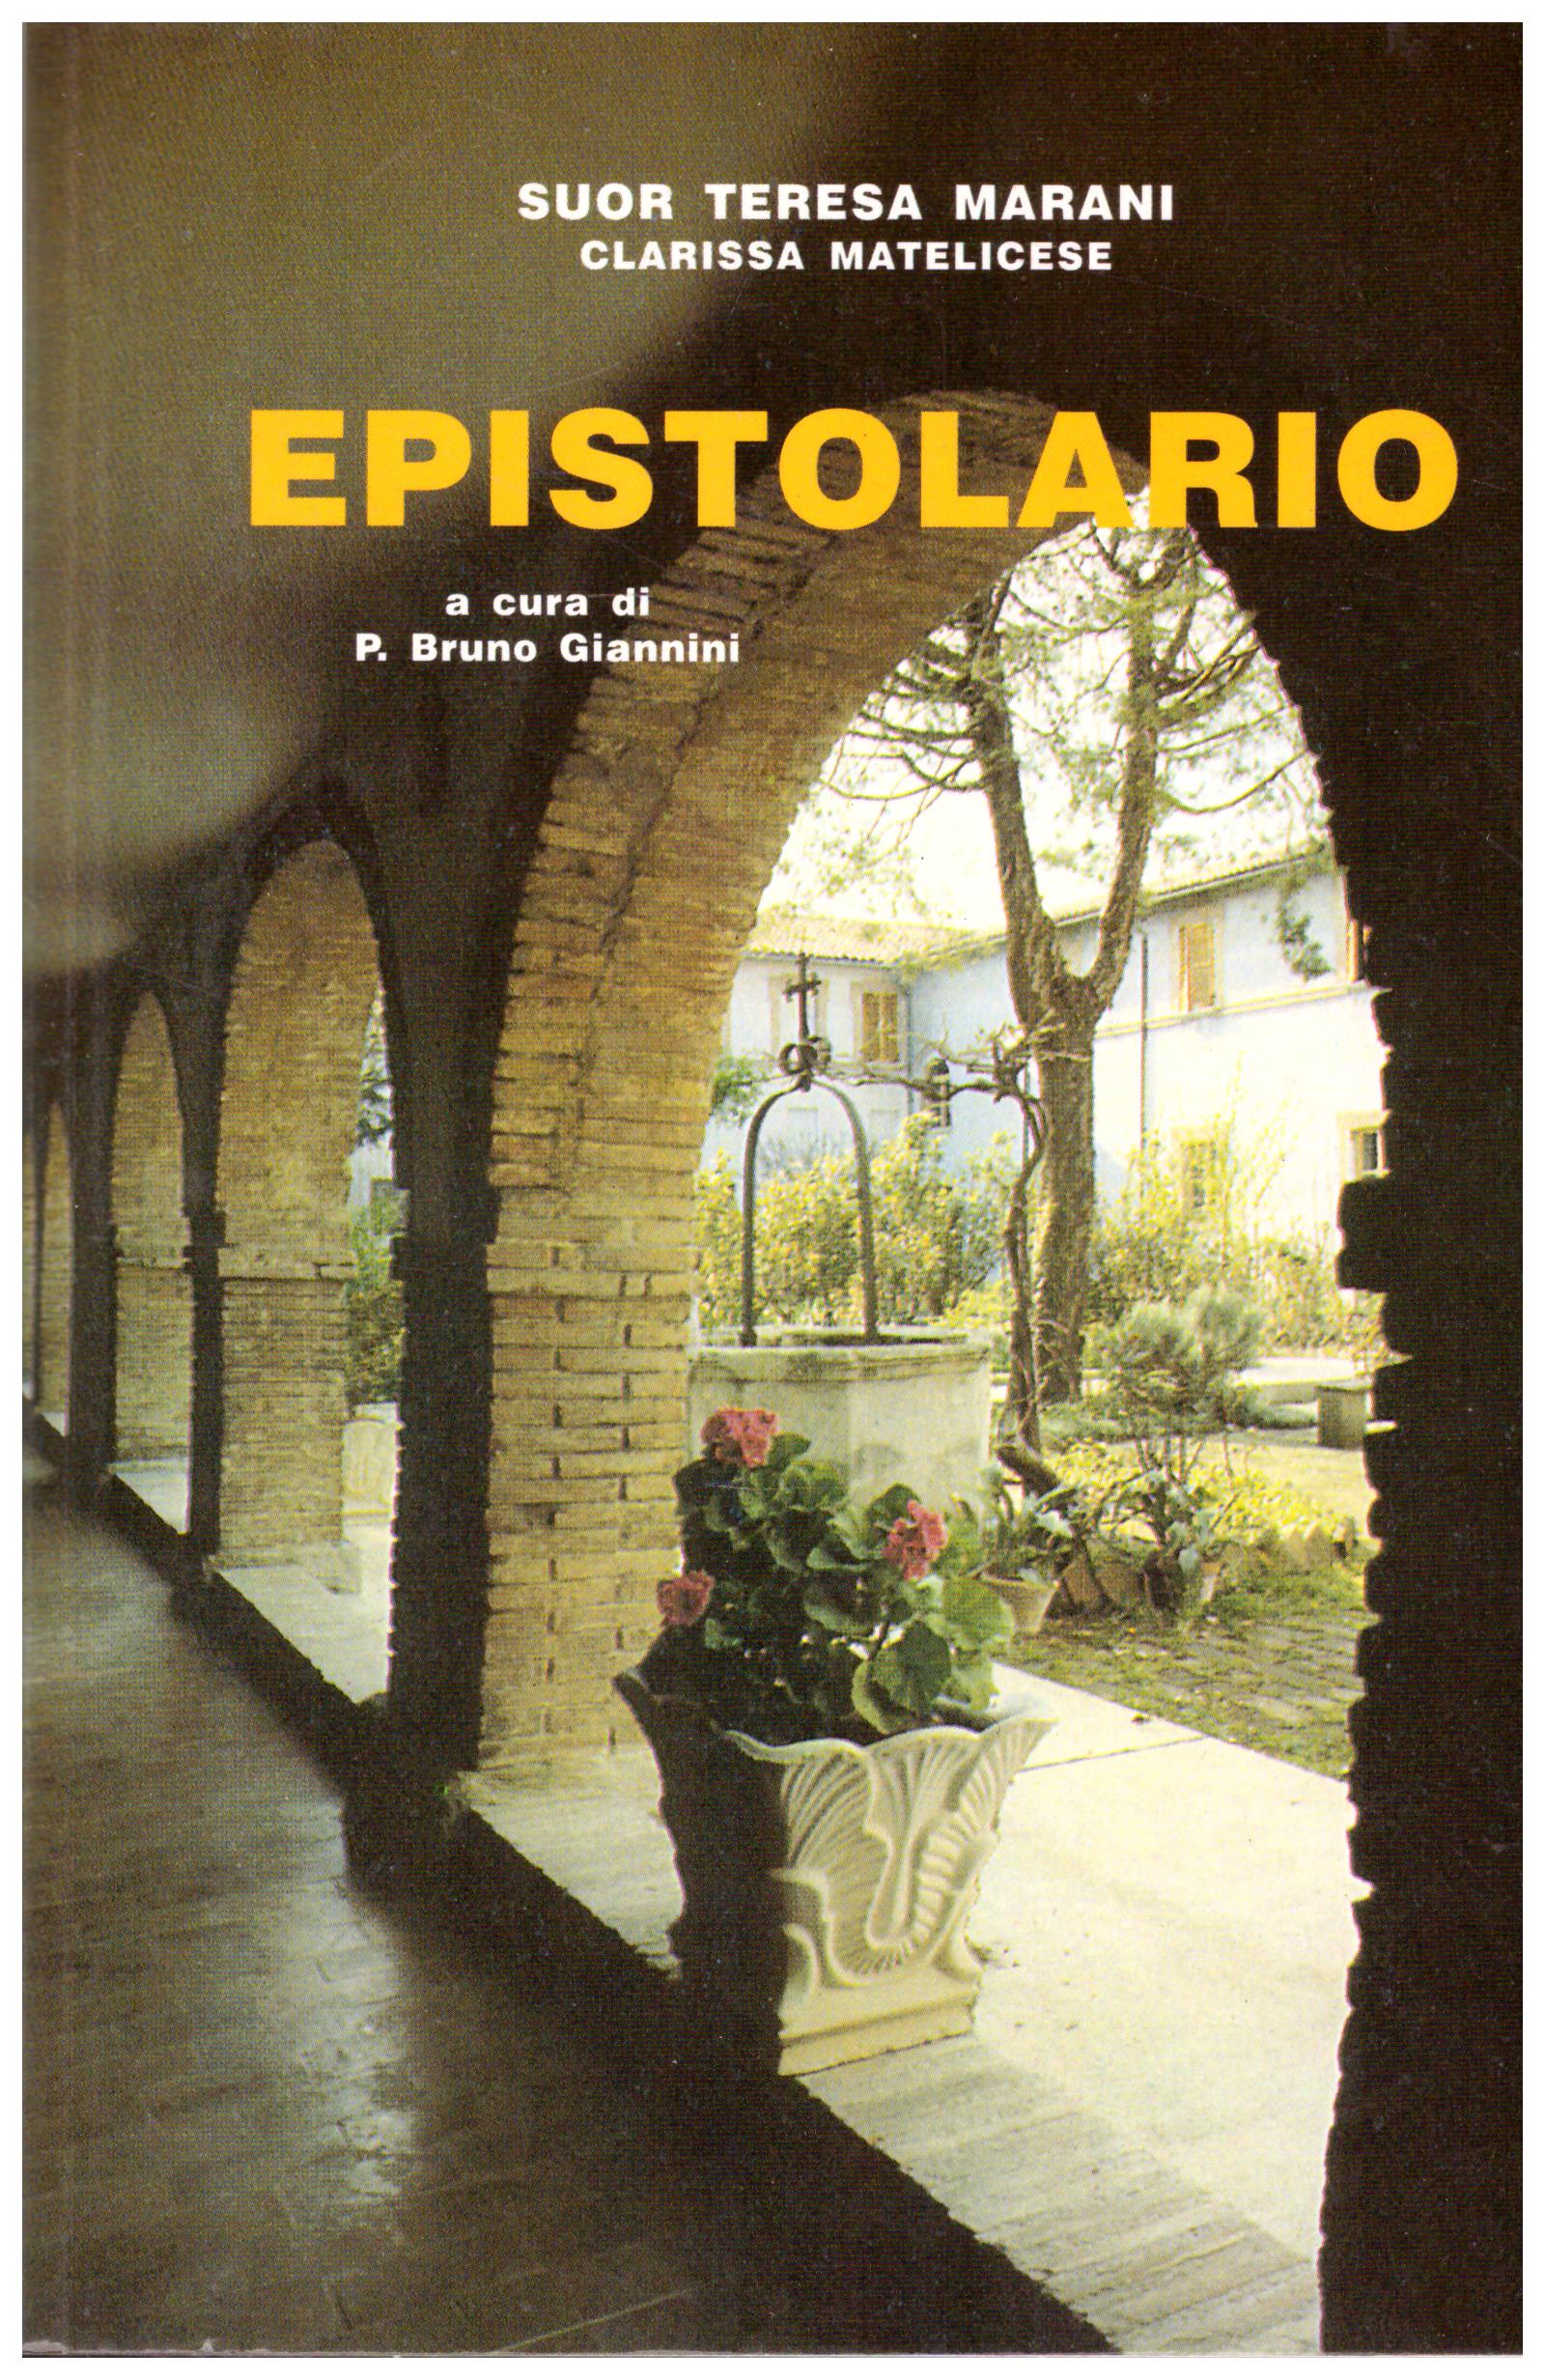 Titolo: Epistolario  Autore : Suor Teresa Marani  Editore: tecnostampa, 1993